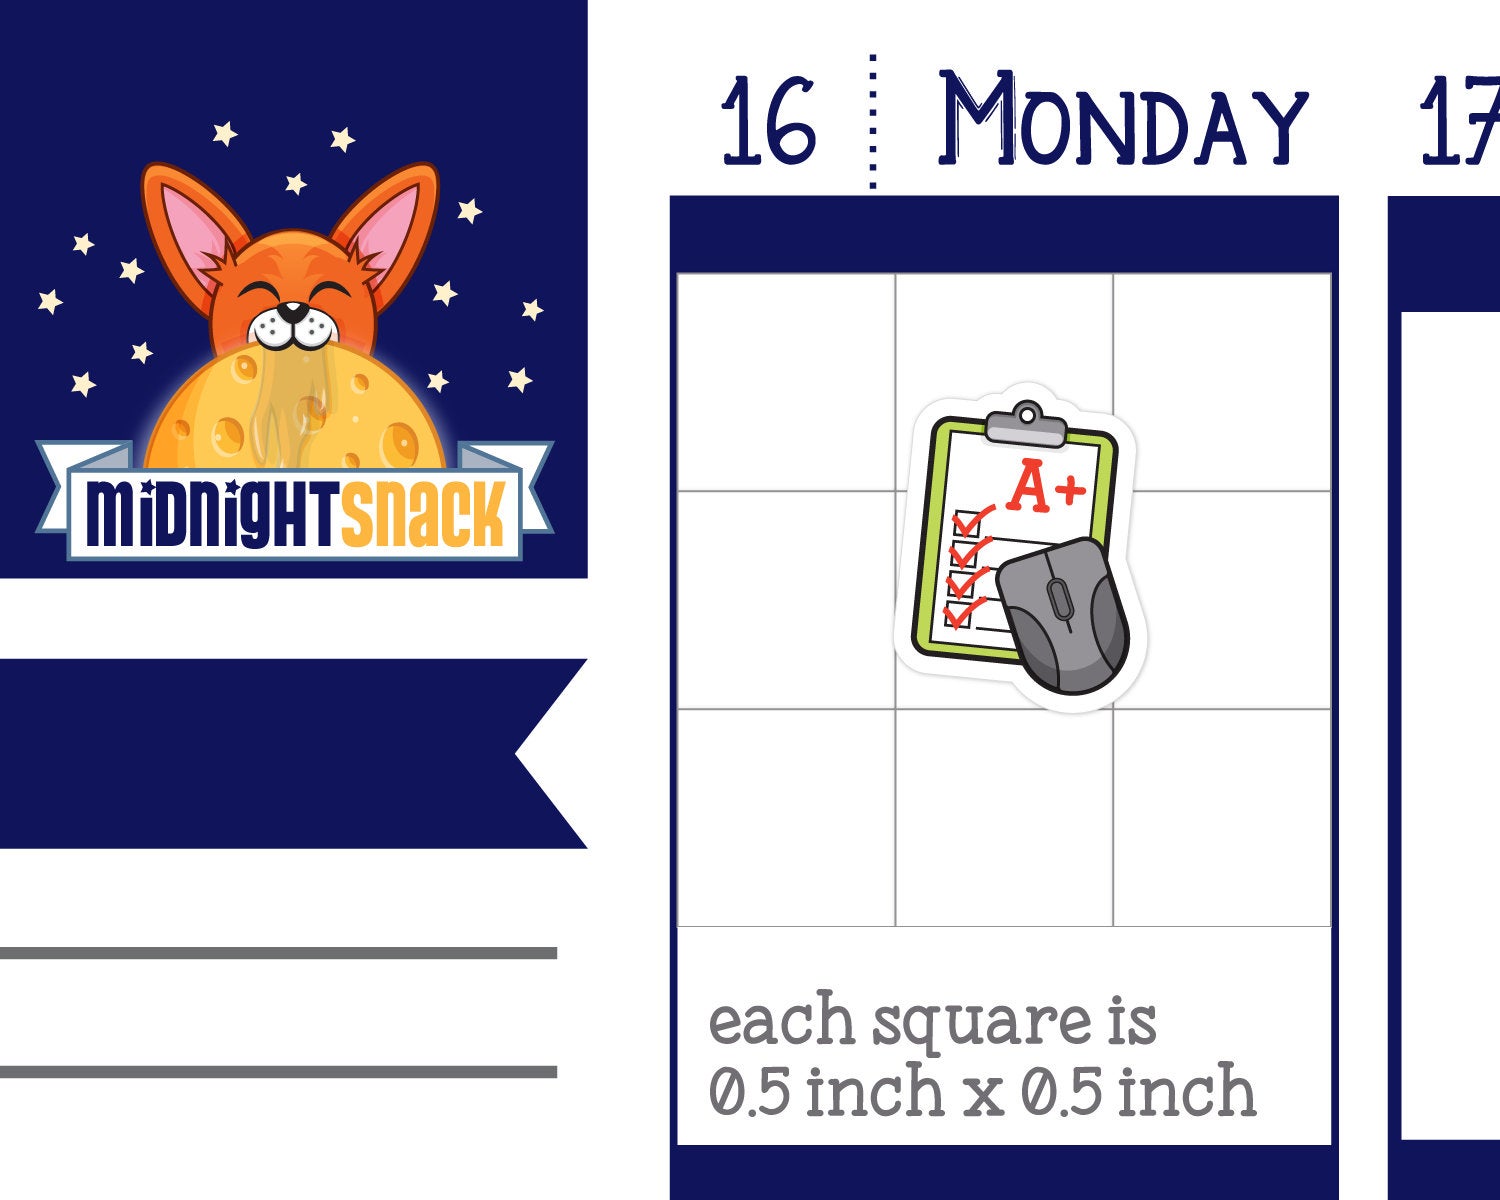 Online School Icon: Virtual School Planner Sticker Midnight Snack Planner